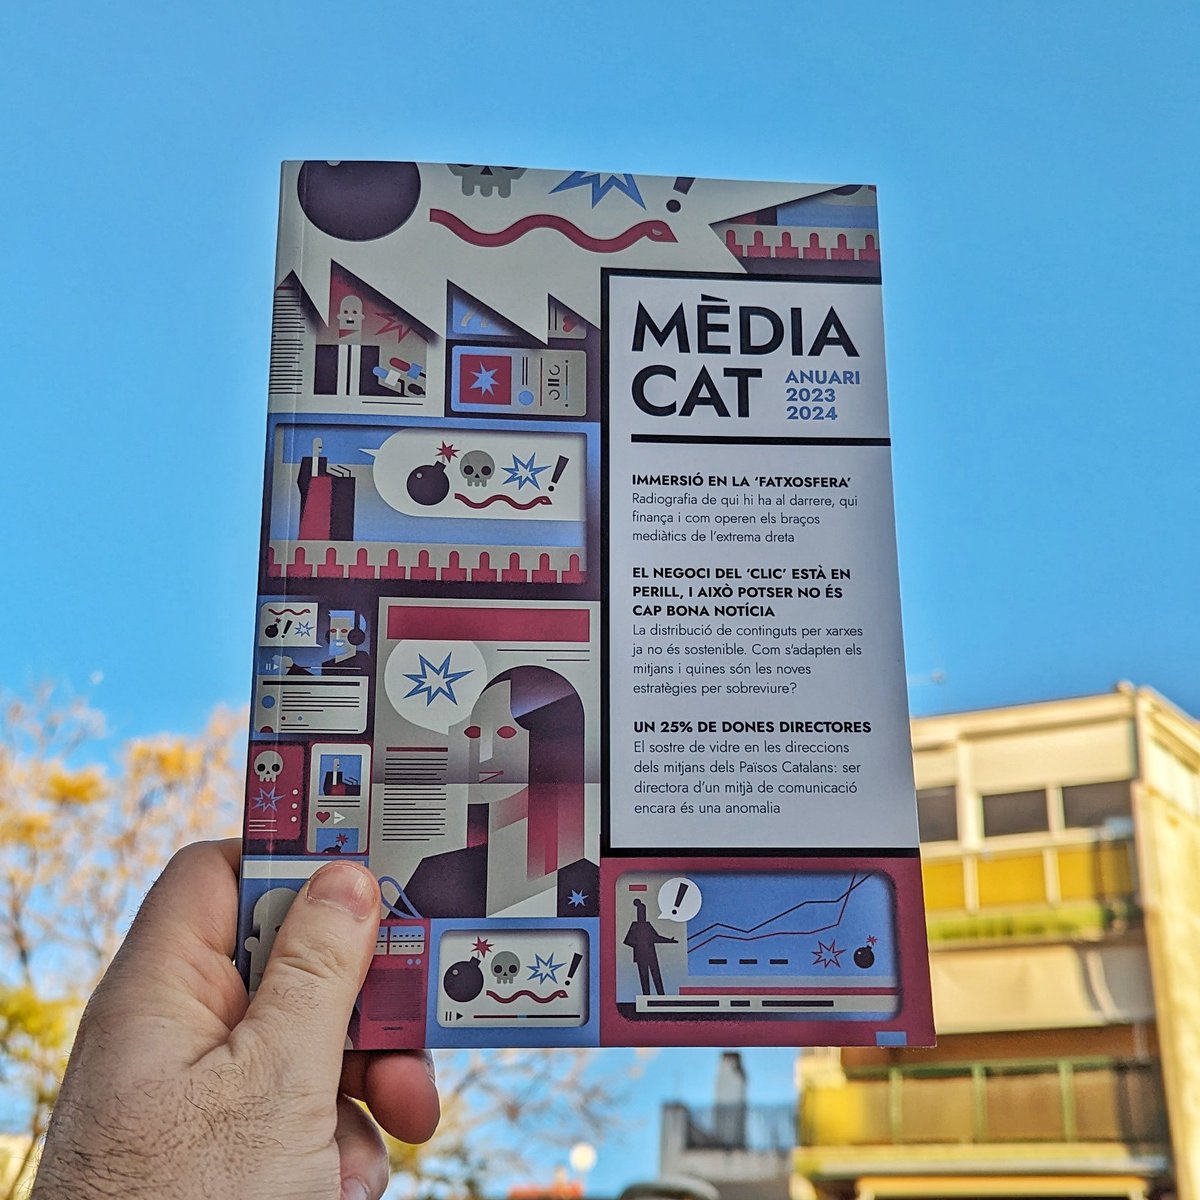 Avui es publica l’#AnuariMèdiacat 2023 - 2024 I ve farcit de reportatges, entrevistes i anàlisis per plantejar-nos què passa al món i com ens en parlen els mitjans. El podràs trobar ja a les llibreries i a la nostra botiga: botiga.media.cat 👇🏼